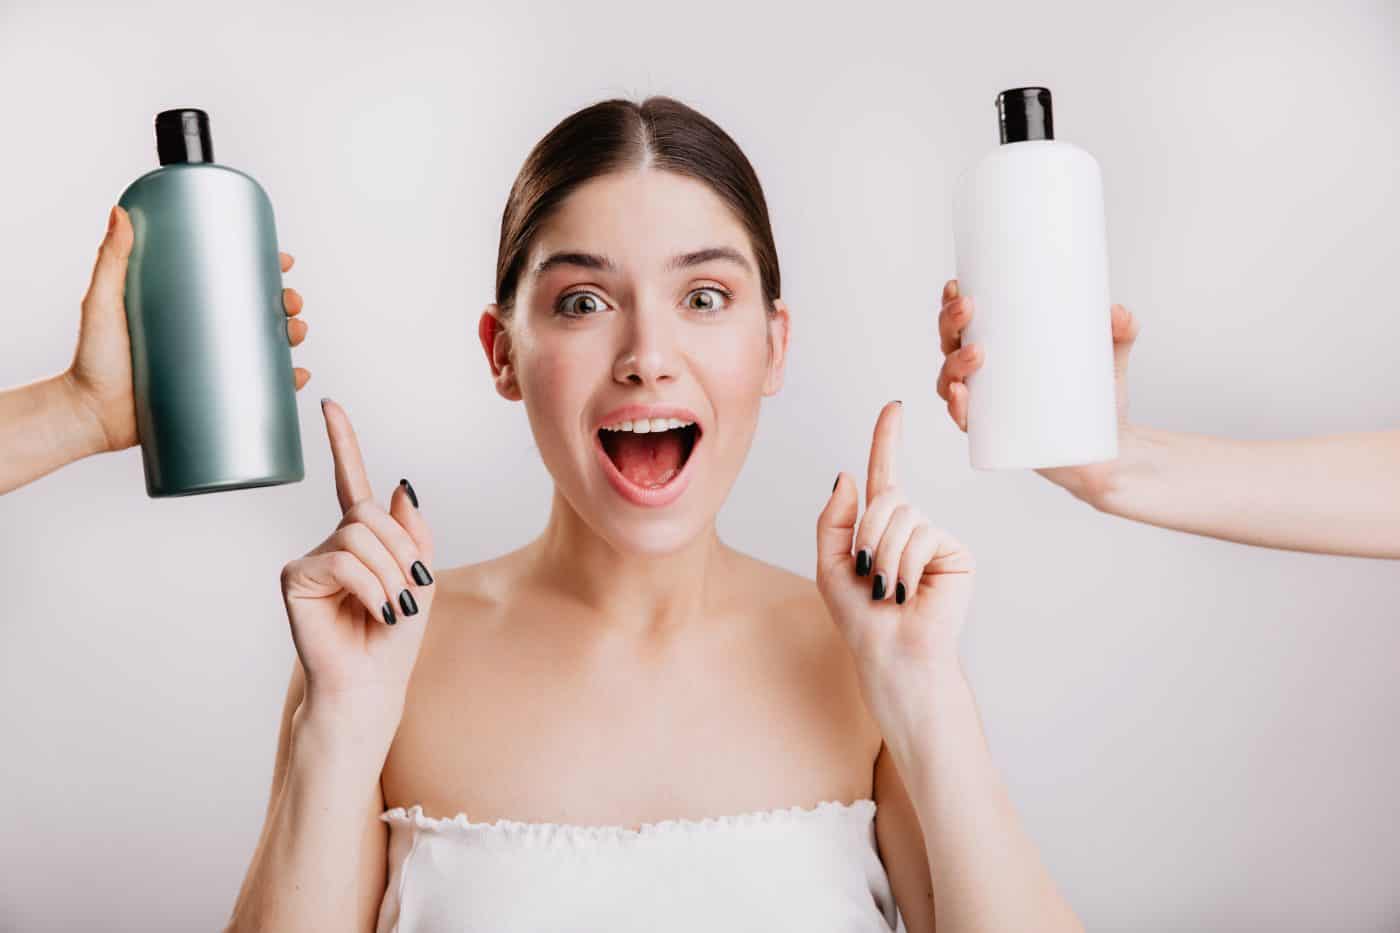 Wat doet eiwit in shampoo met je haar?